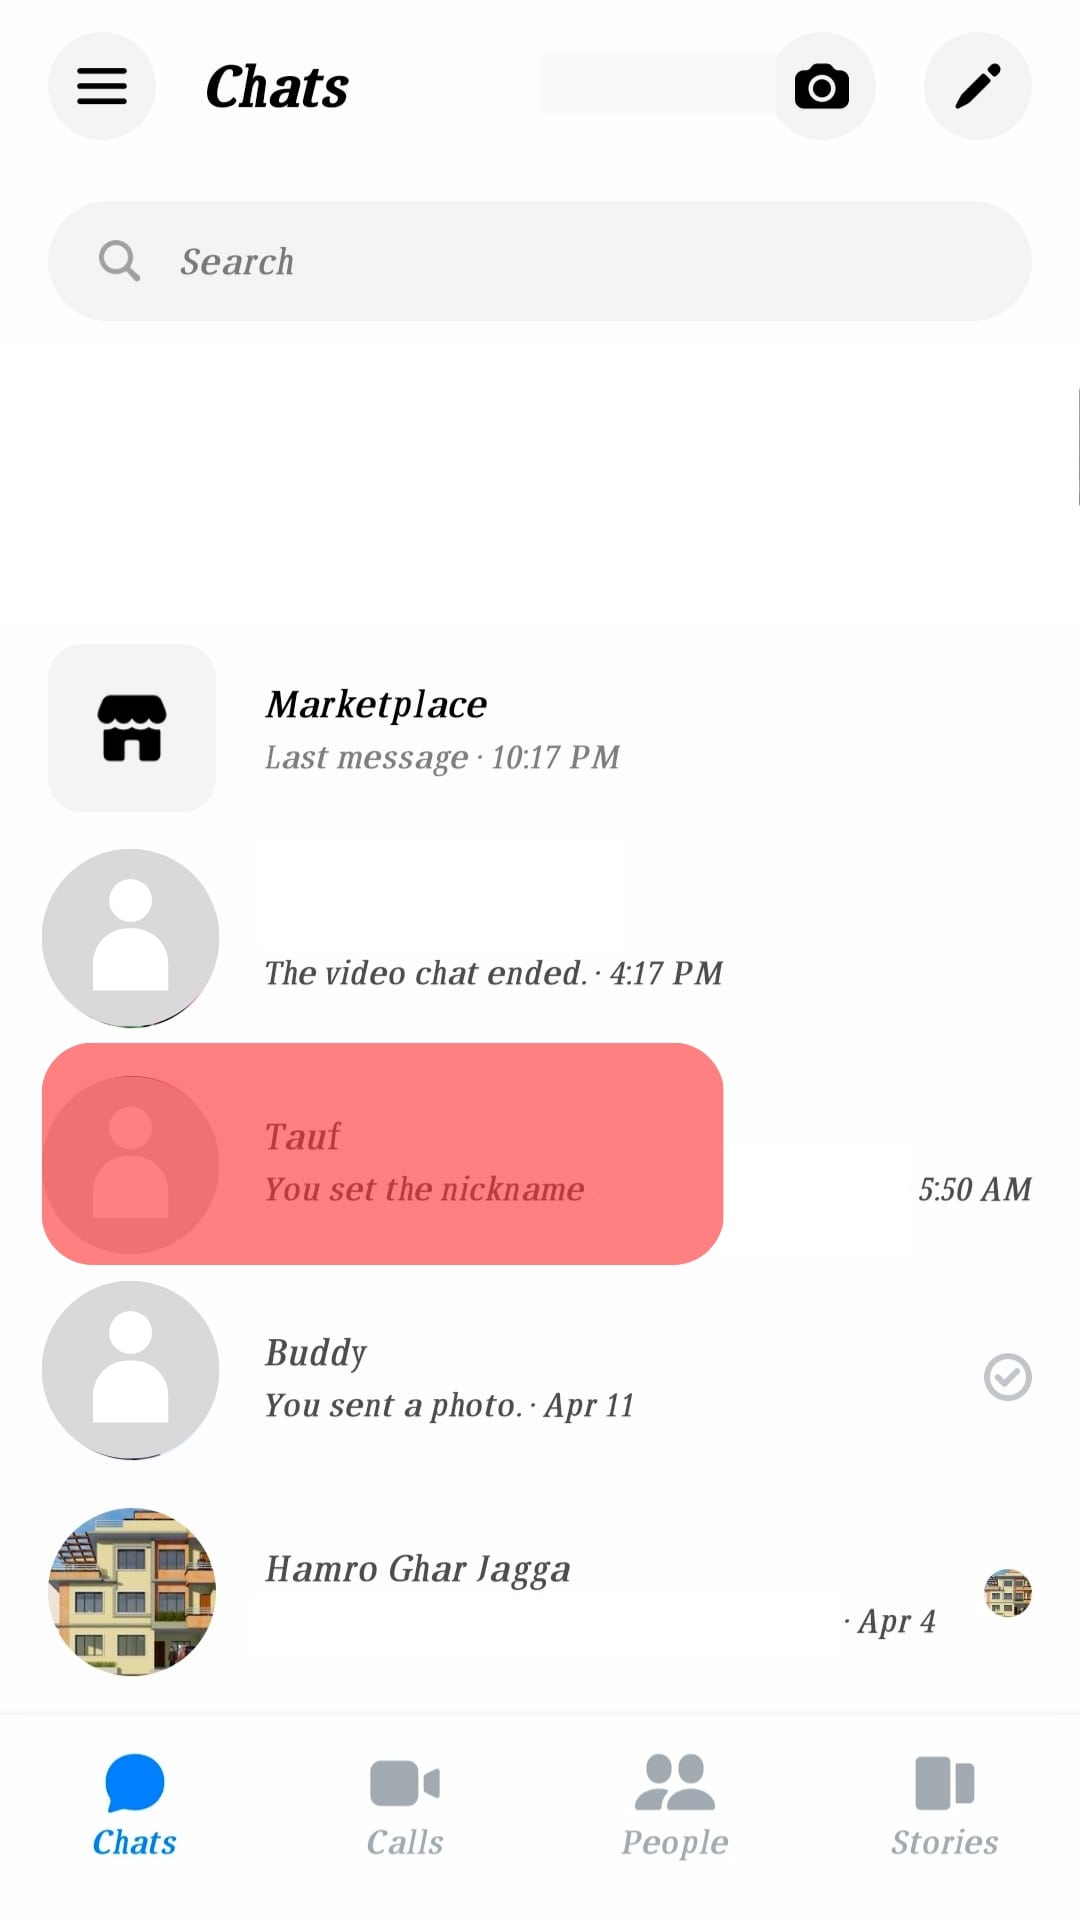 ¿Por qué no puedo eliminar mensajes en Messenger?